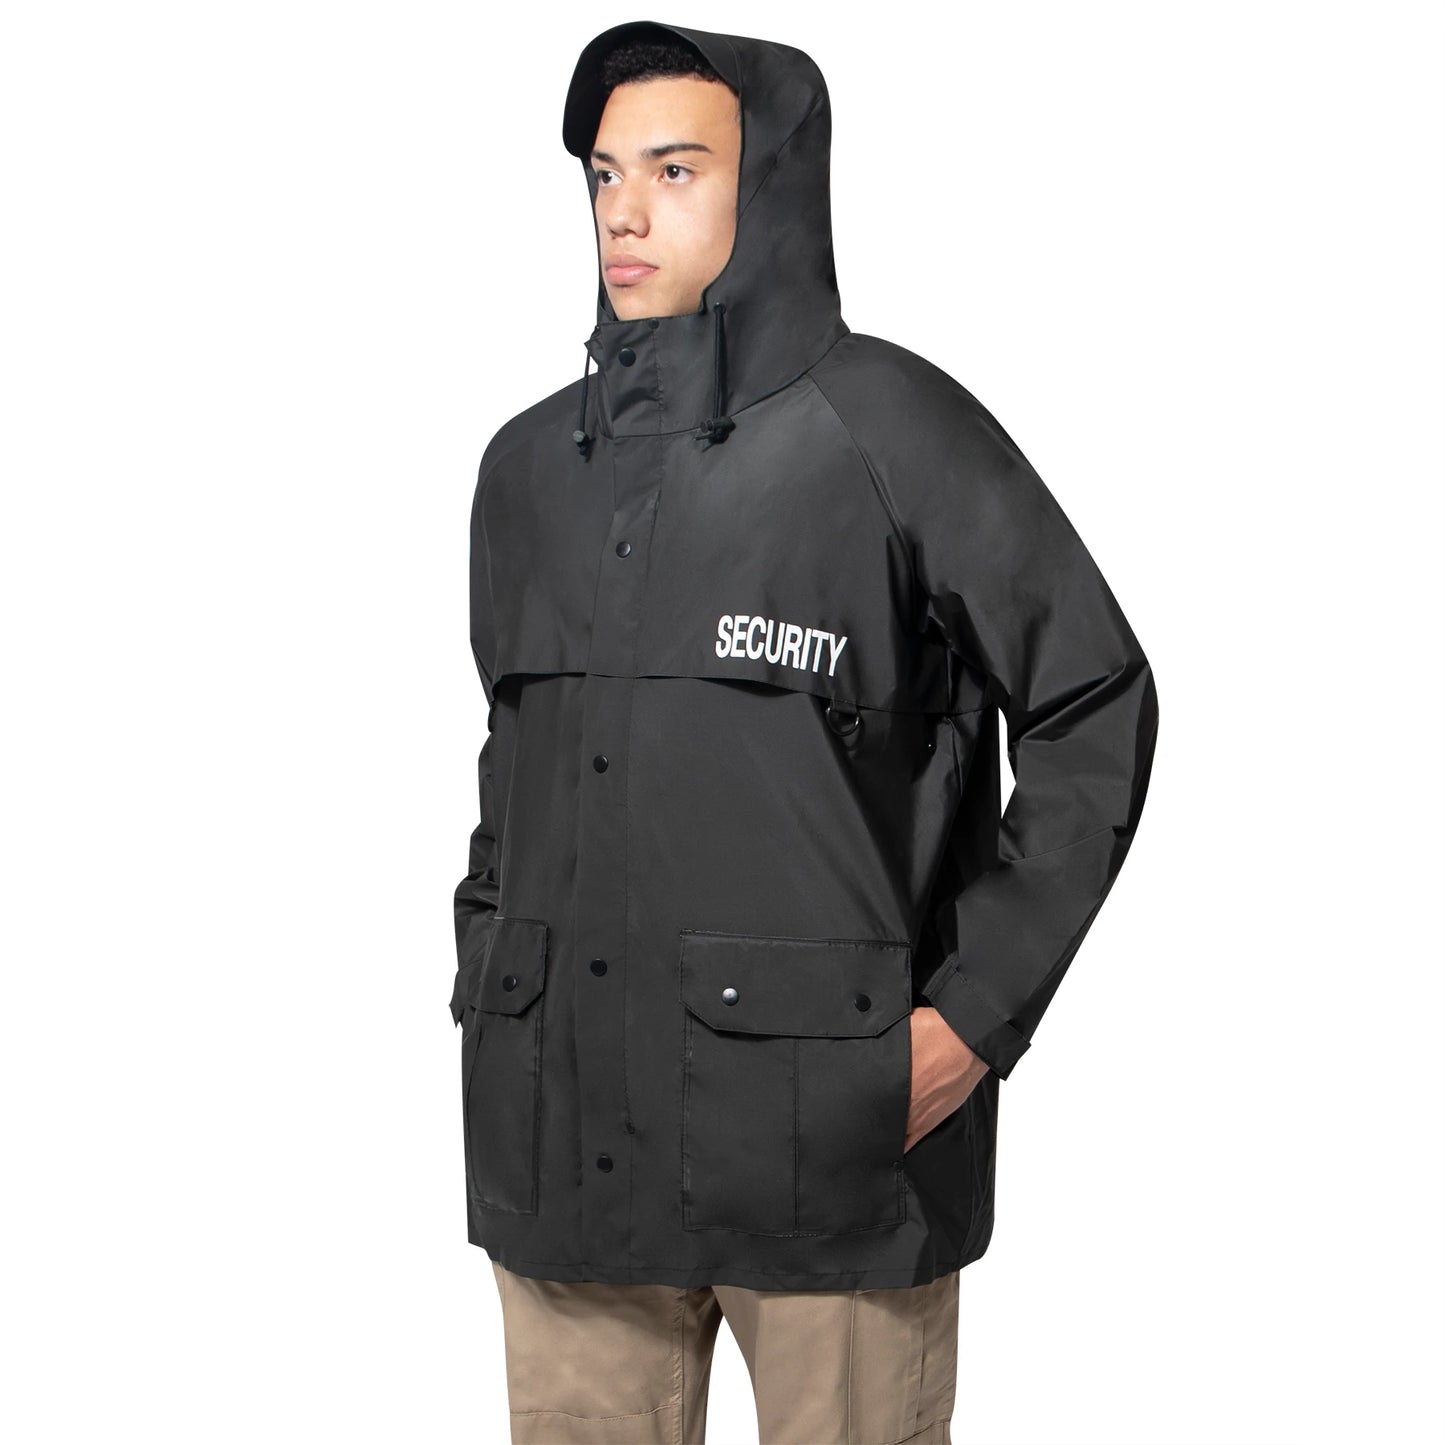 Rothco Black Security Nylon Rain Jacket - 2560 - S